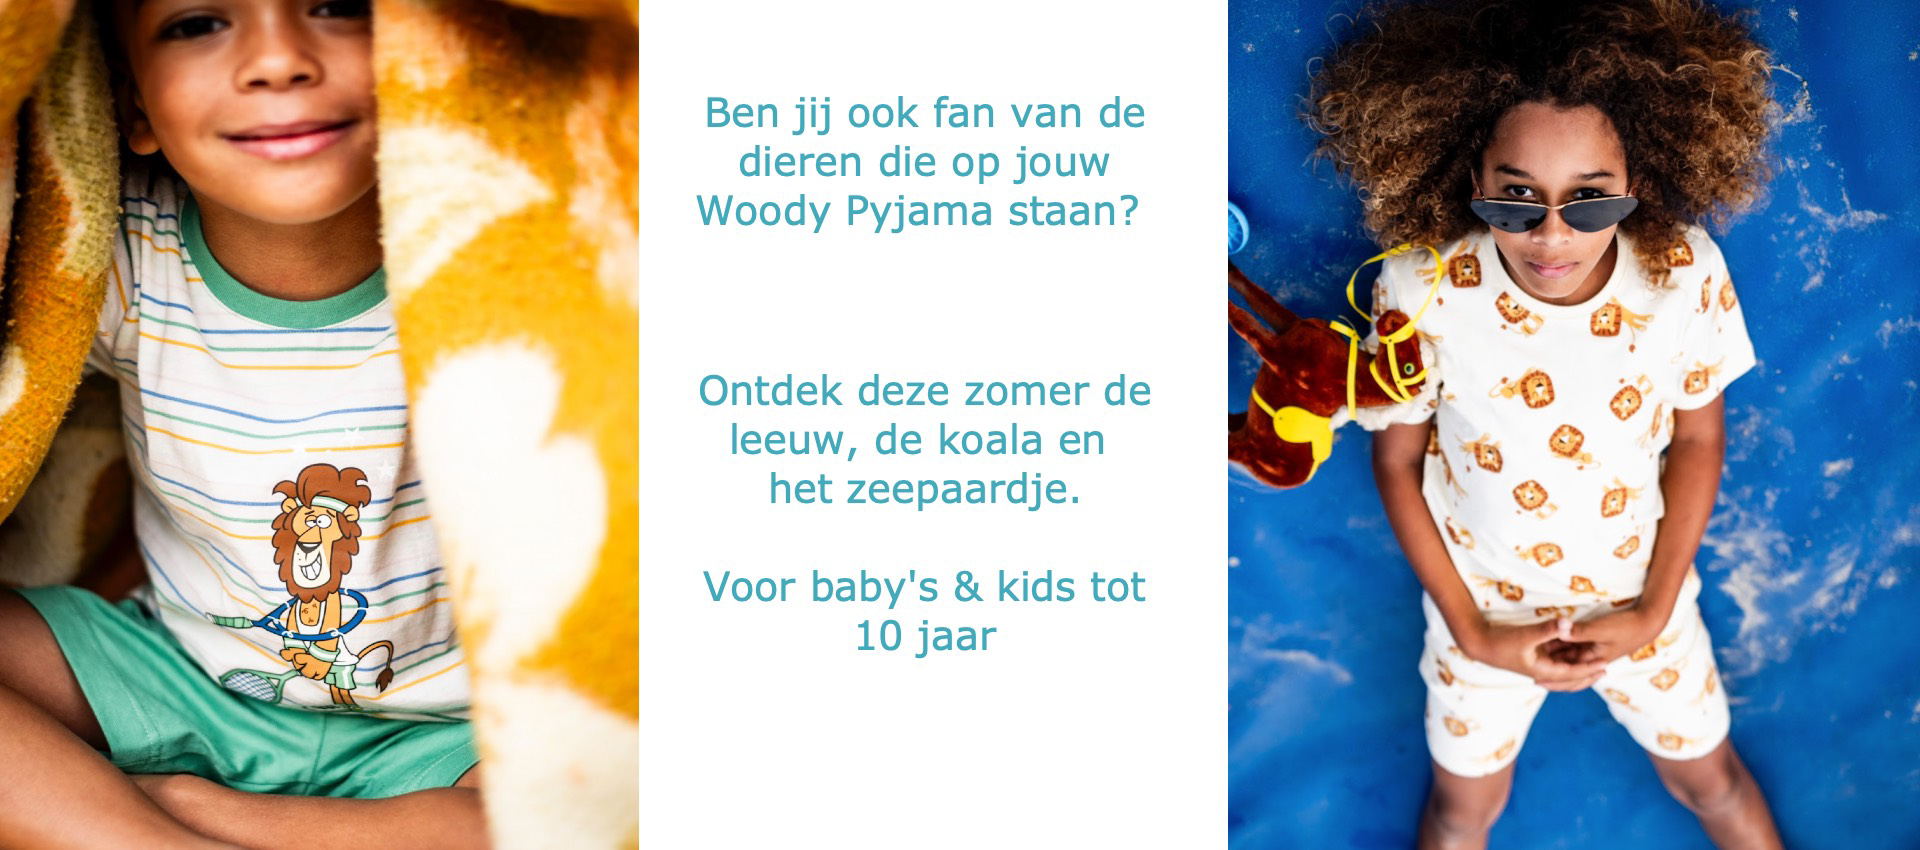 Woody koala leeuw zeepaardje pyjama Belgisch baby kids Buysse Wetteren babyshop